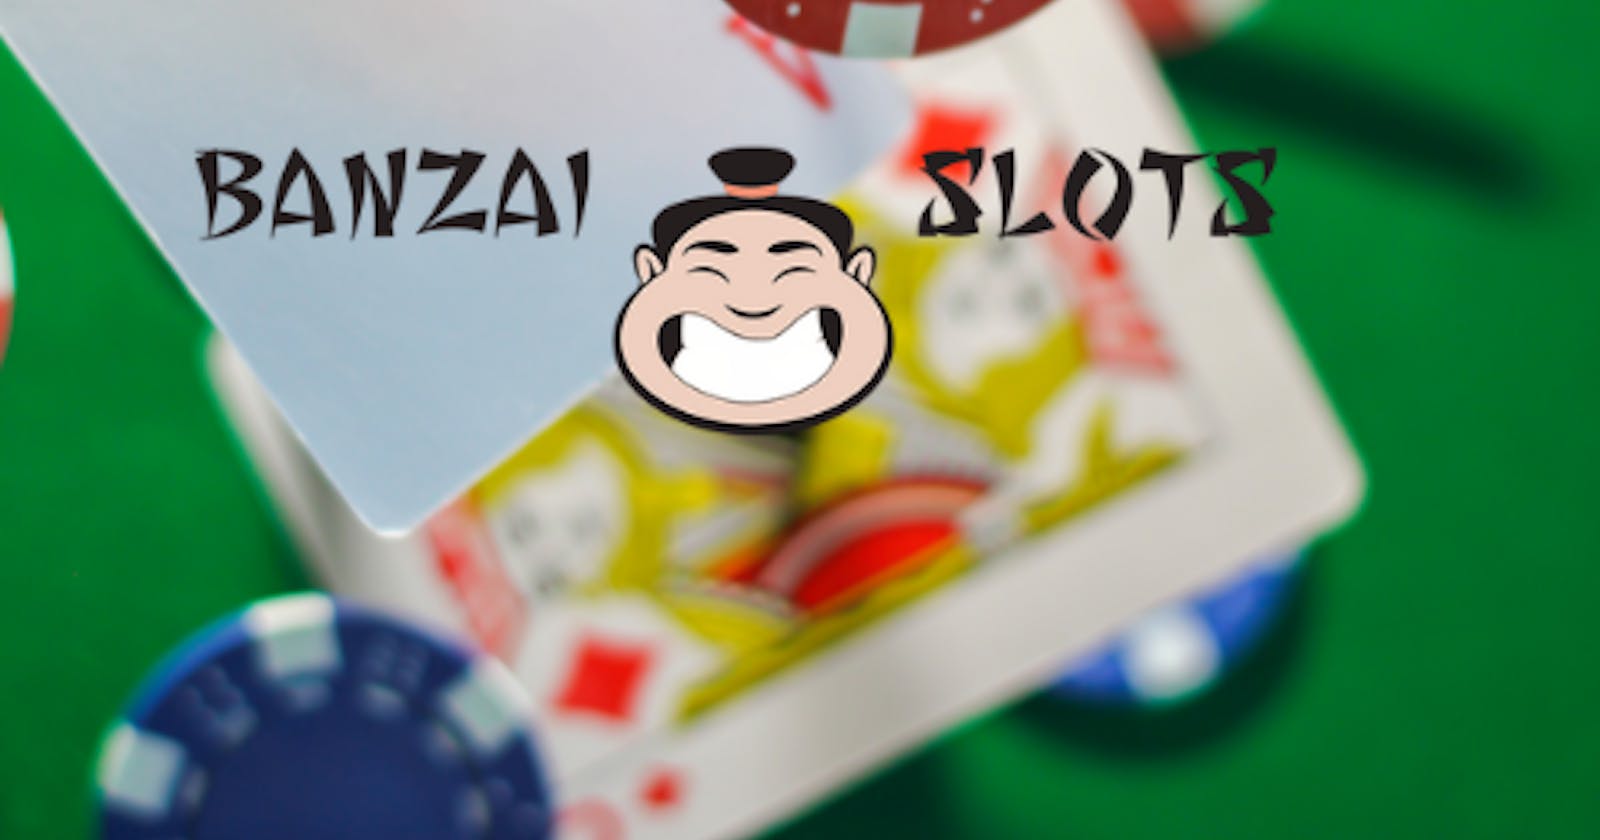 Casino Banzai Slots - Un casino génial et ultra rapide